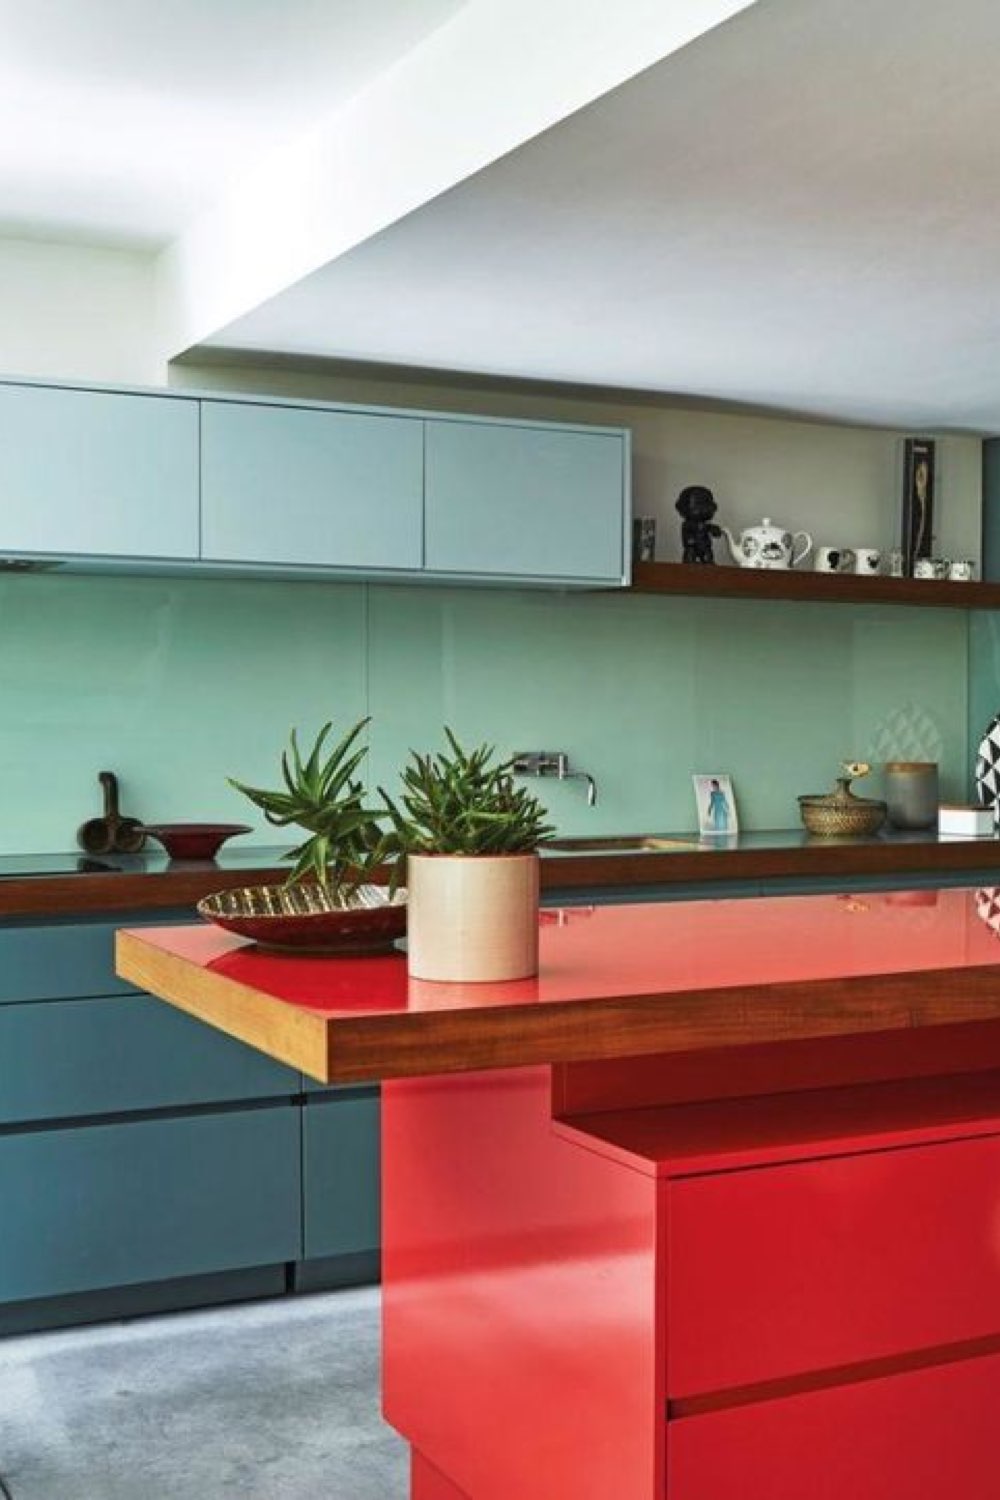 comment associer couleurs complementaires interieur cuisine moderne et colorée vert d'eau vert sapin et îlot central rouge décor original et moderne